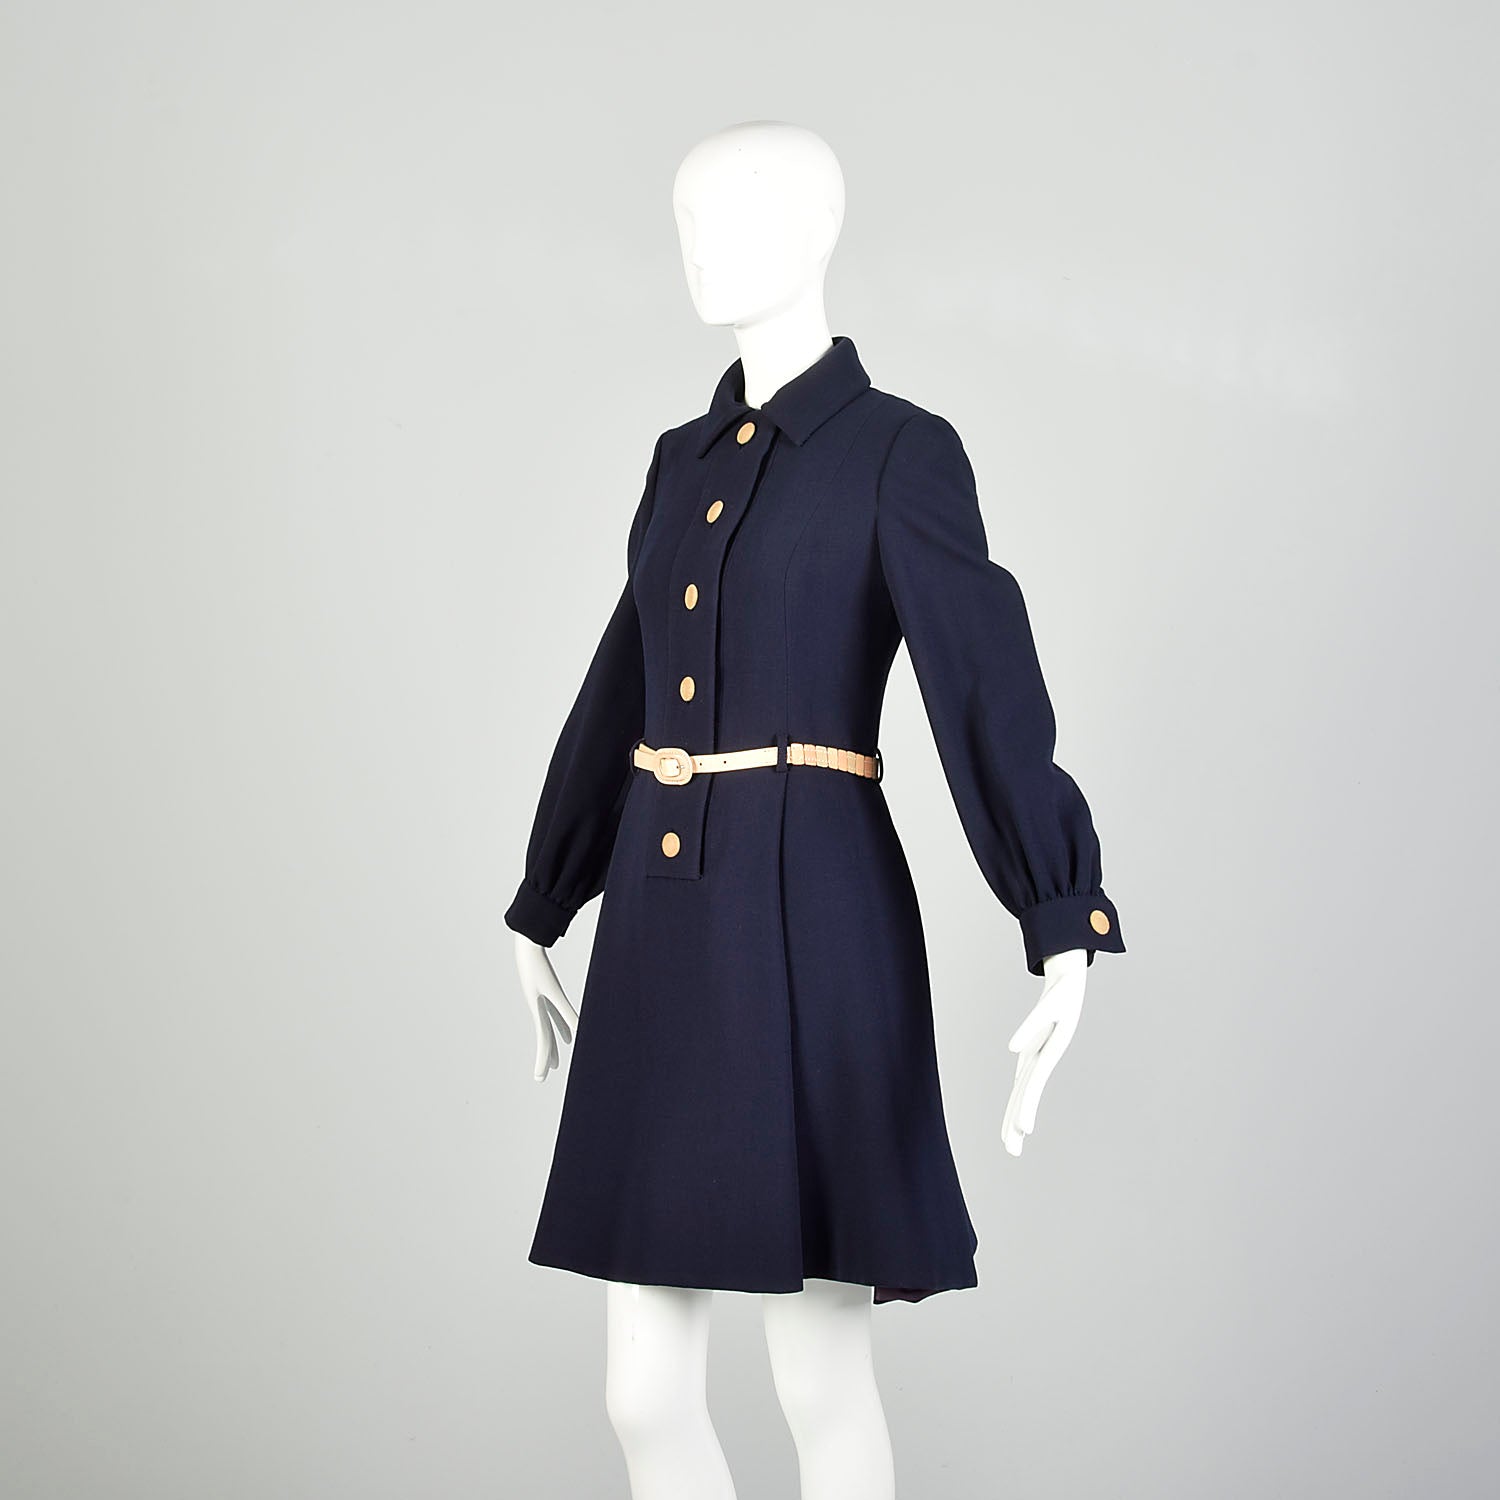 Geoffrey Beene Dress 1960s Mod Pleated Mini Long Sleeve